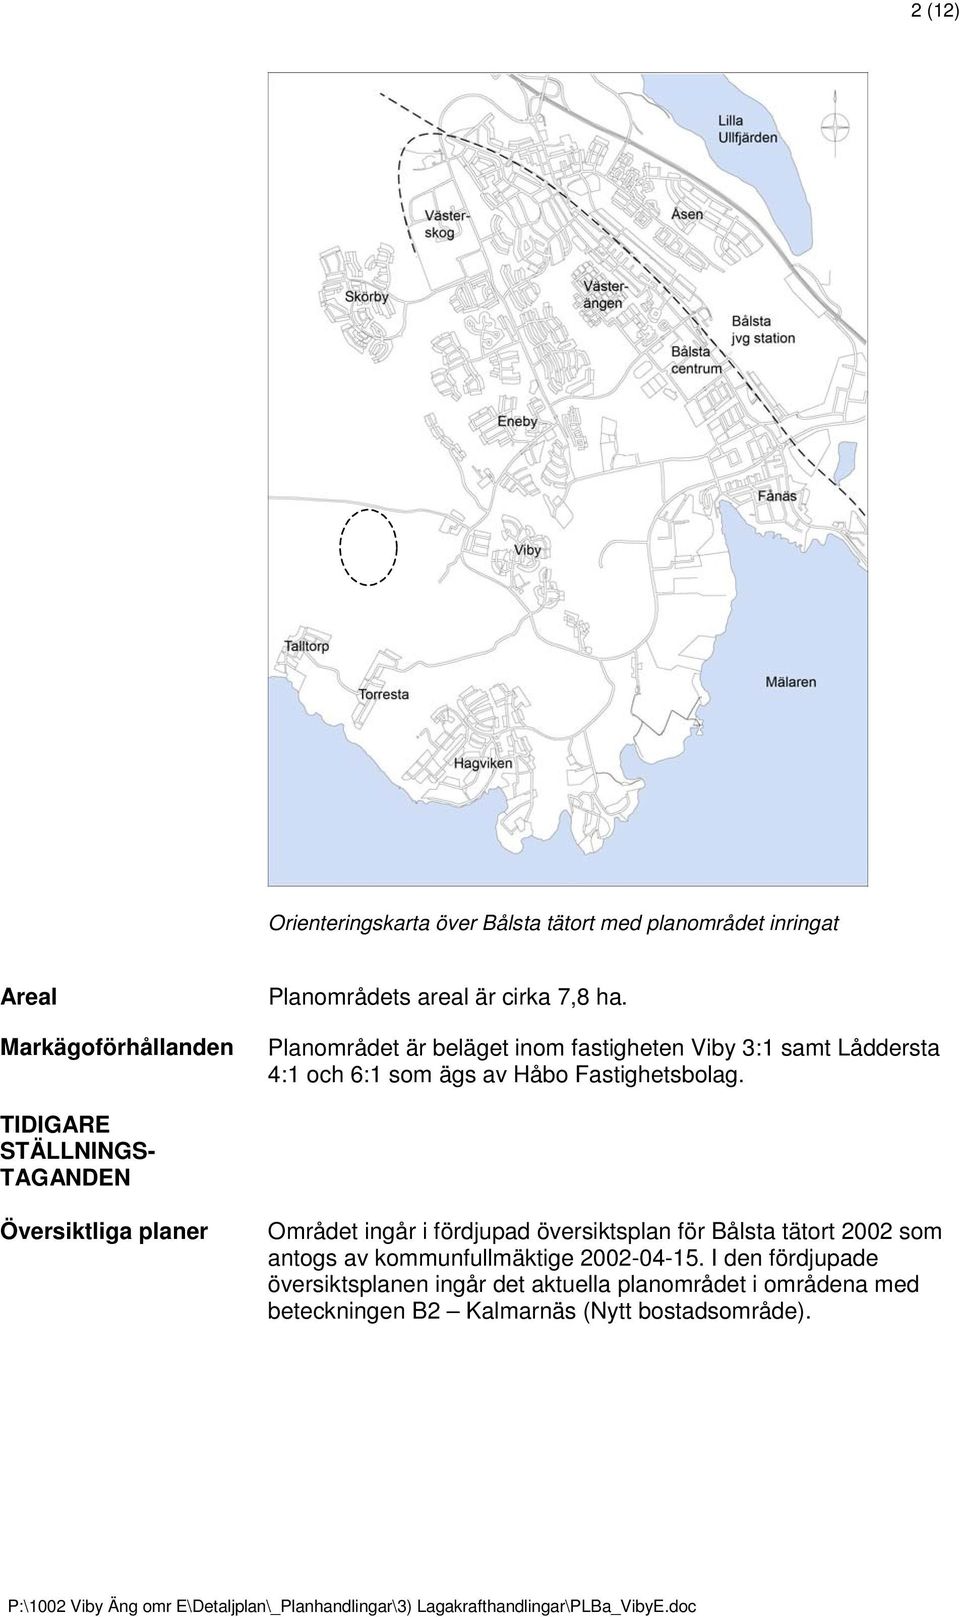 TIDIGARE STÄLLNINGS- TAGANDEN Översiktliga planer Området ingår i fördjupad översiktsplan för Bålsta tätort 2002 som antogs av